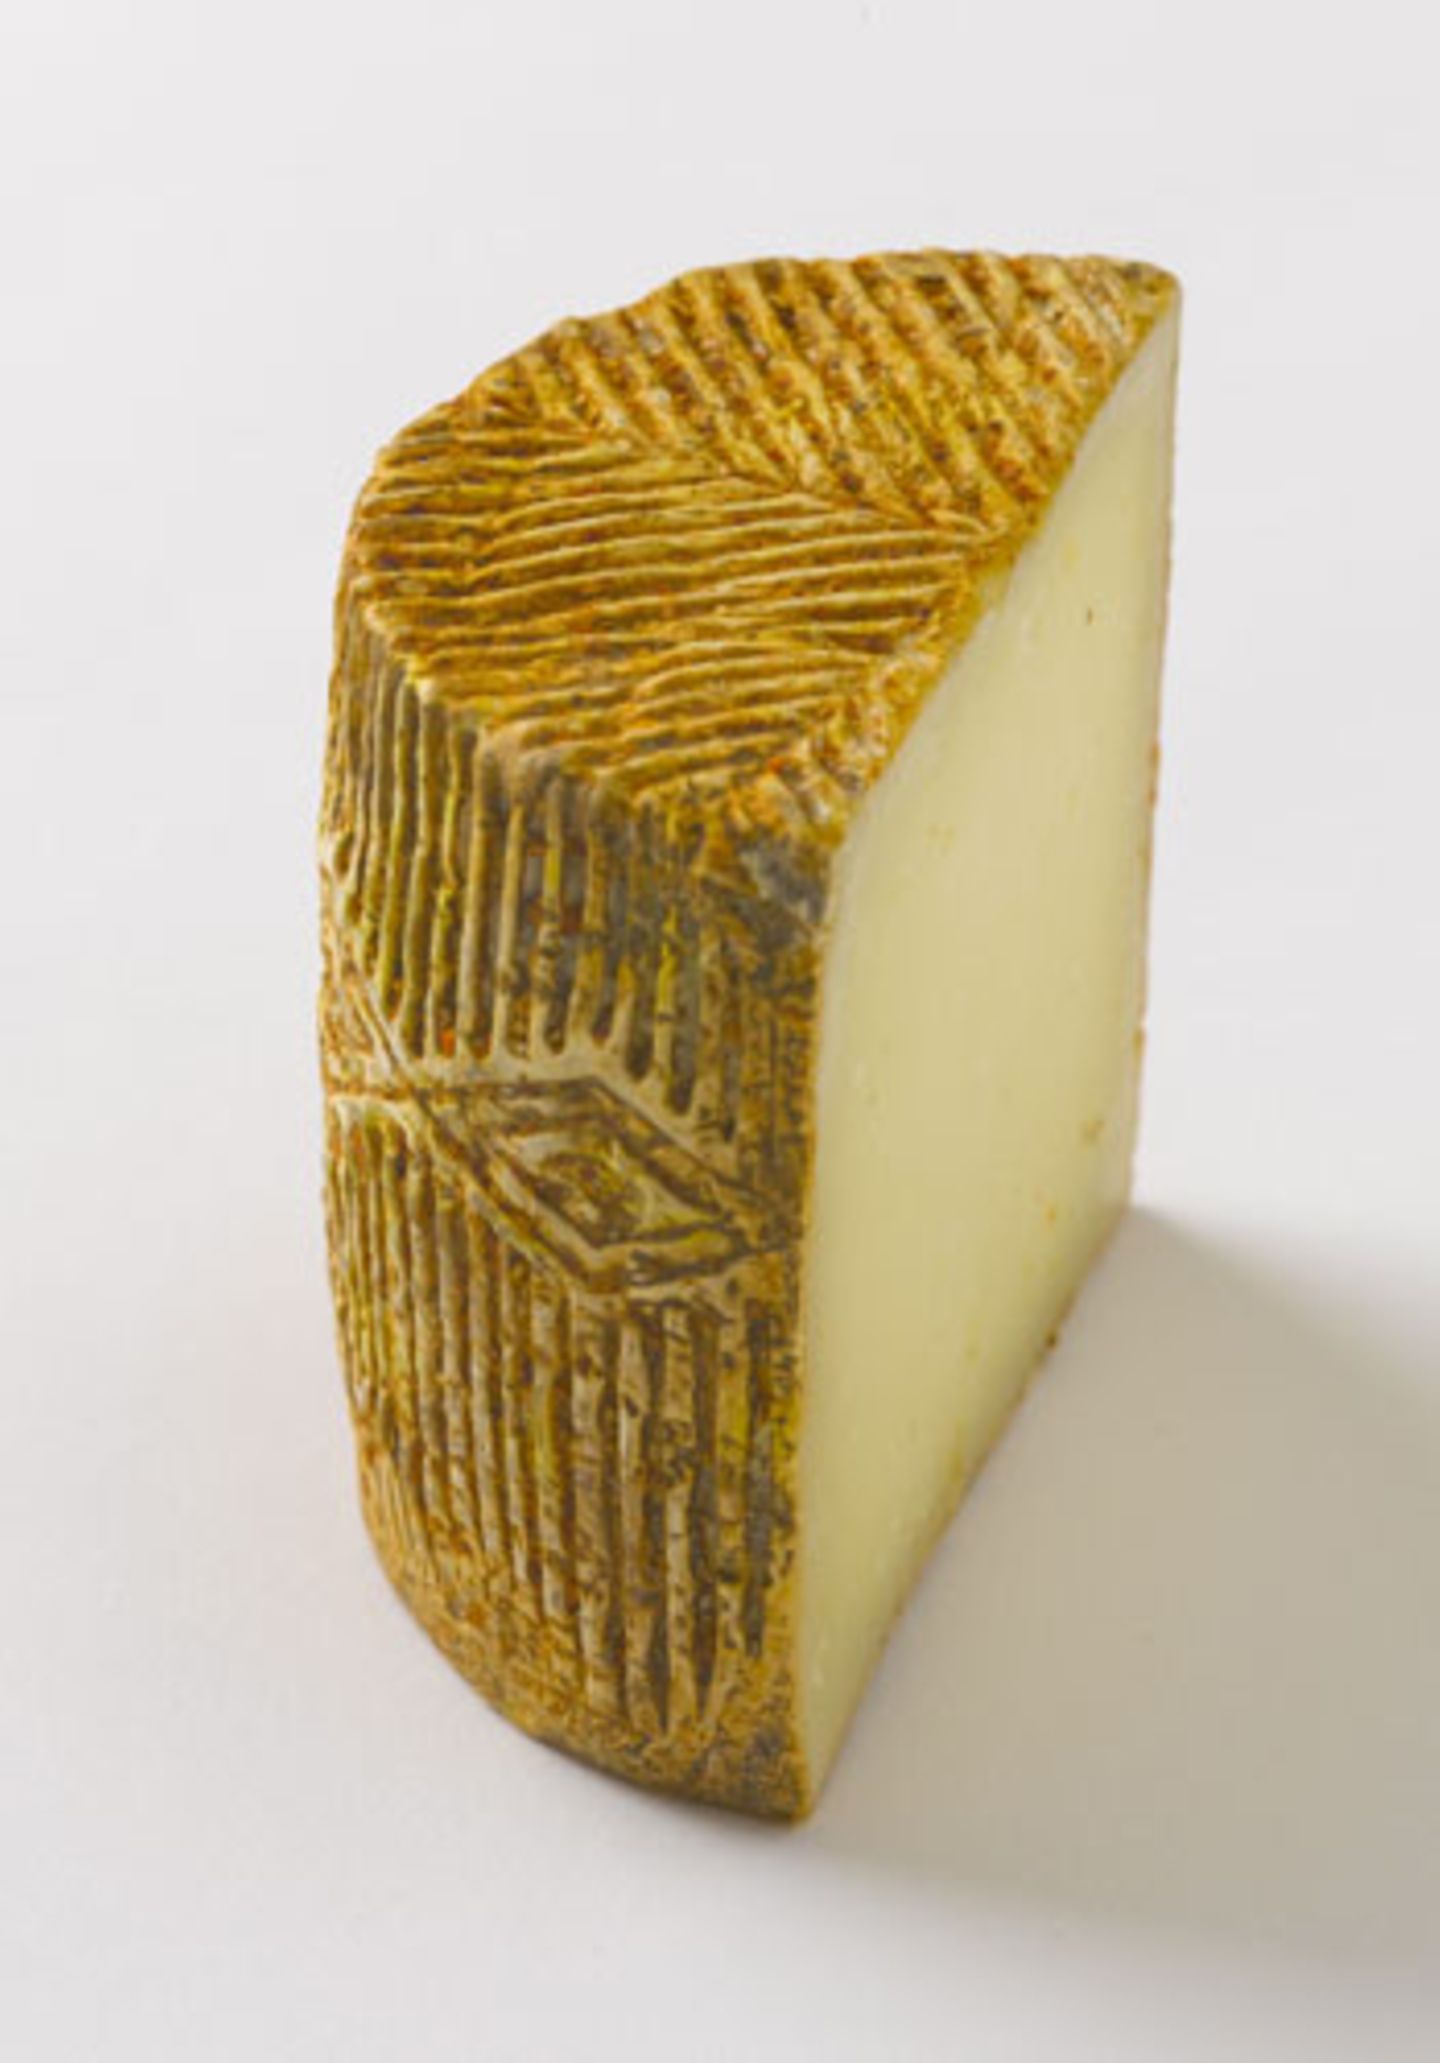 Zur Zwiebelkonfitüre passt beispielsweise Tommette d'Ariège, ein harter, gereifter Käse aus den Bergen des Ariège im französischen Baskenland. Es ist ein Brébis, also ein Käse aus Schafsmilch. Wunderbar ist die Zwiebelkonfitüre auch mit Pecorino oder Manchego!